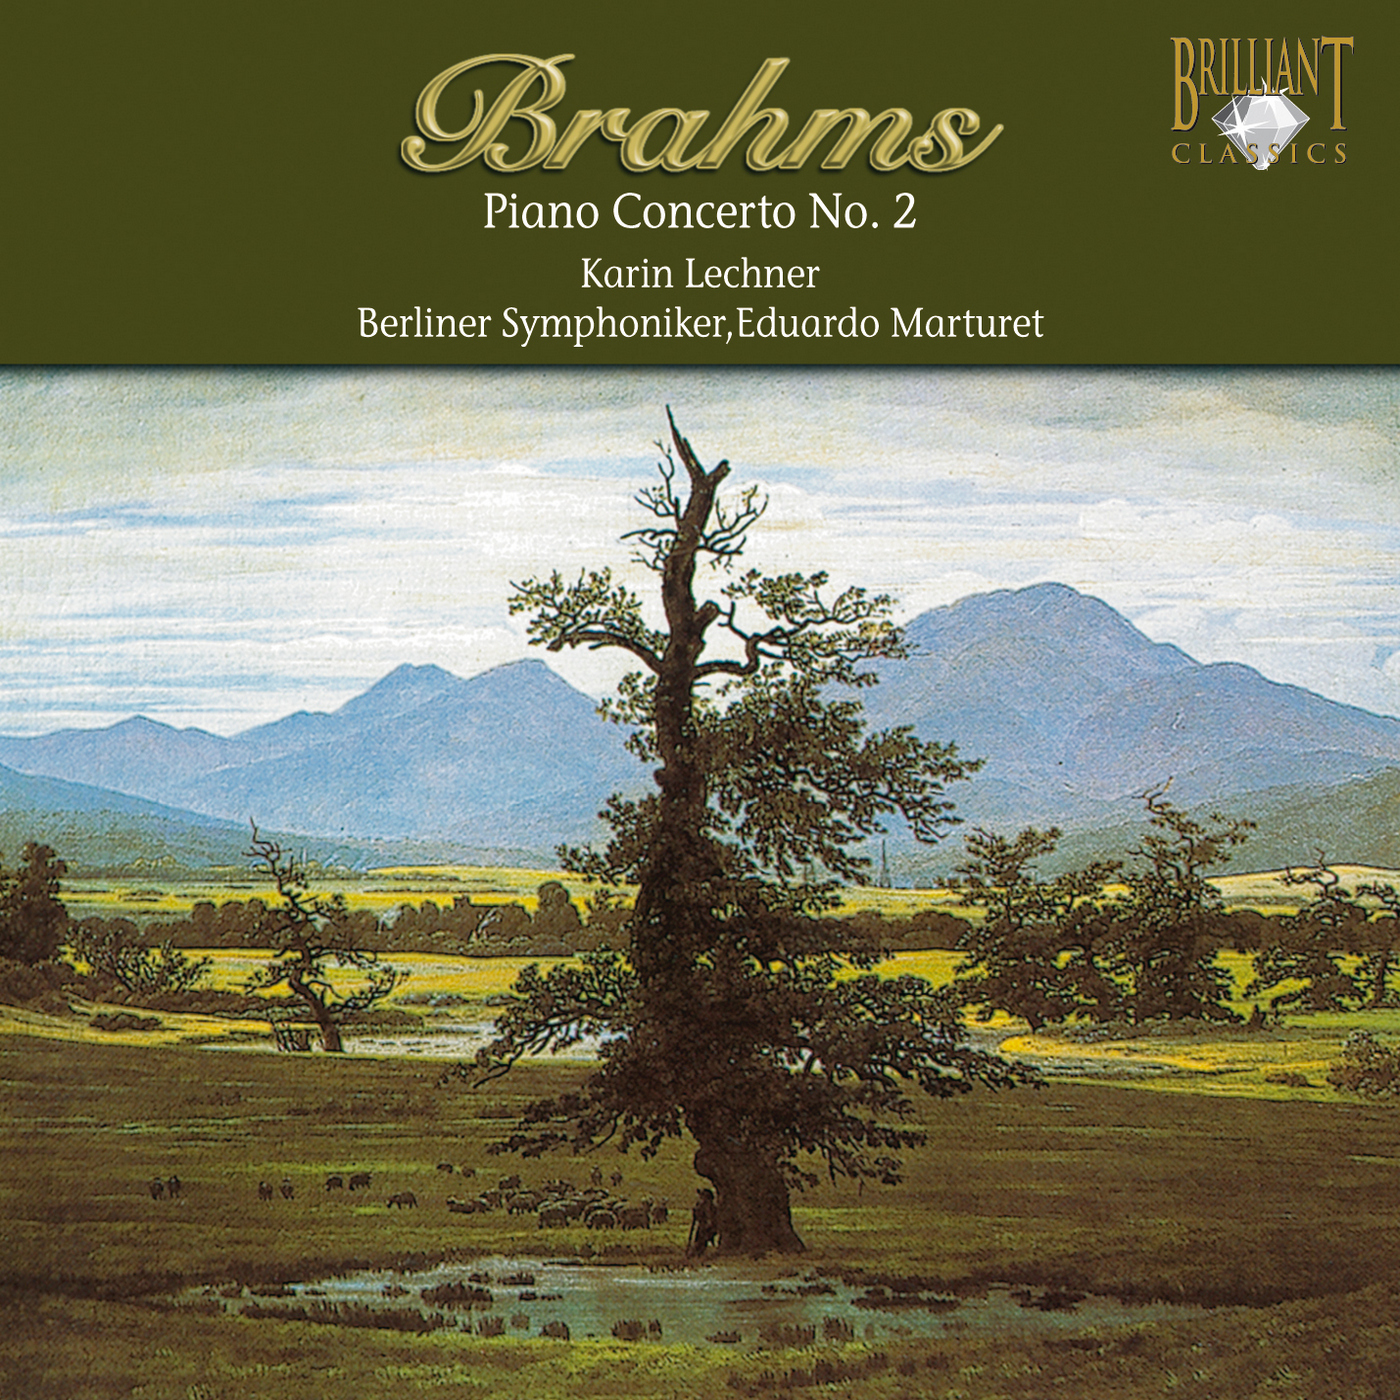 CD Brahms - Piano concerto no.2 - Karin Lechner - Berliner Symphoniker